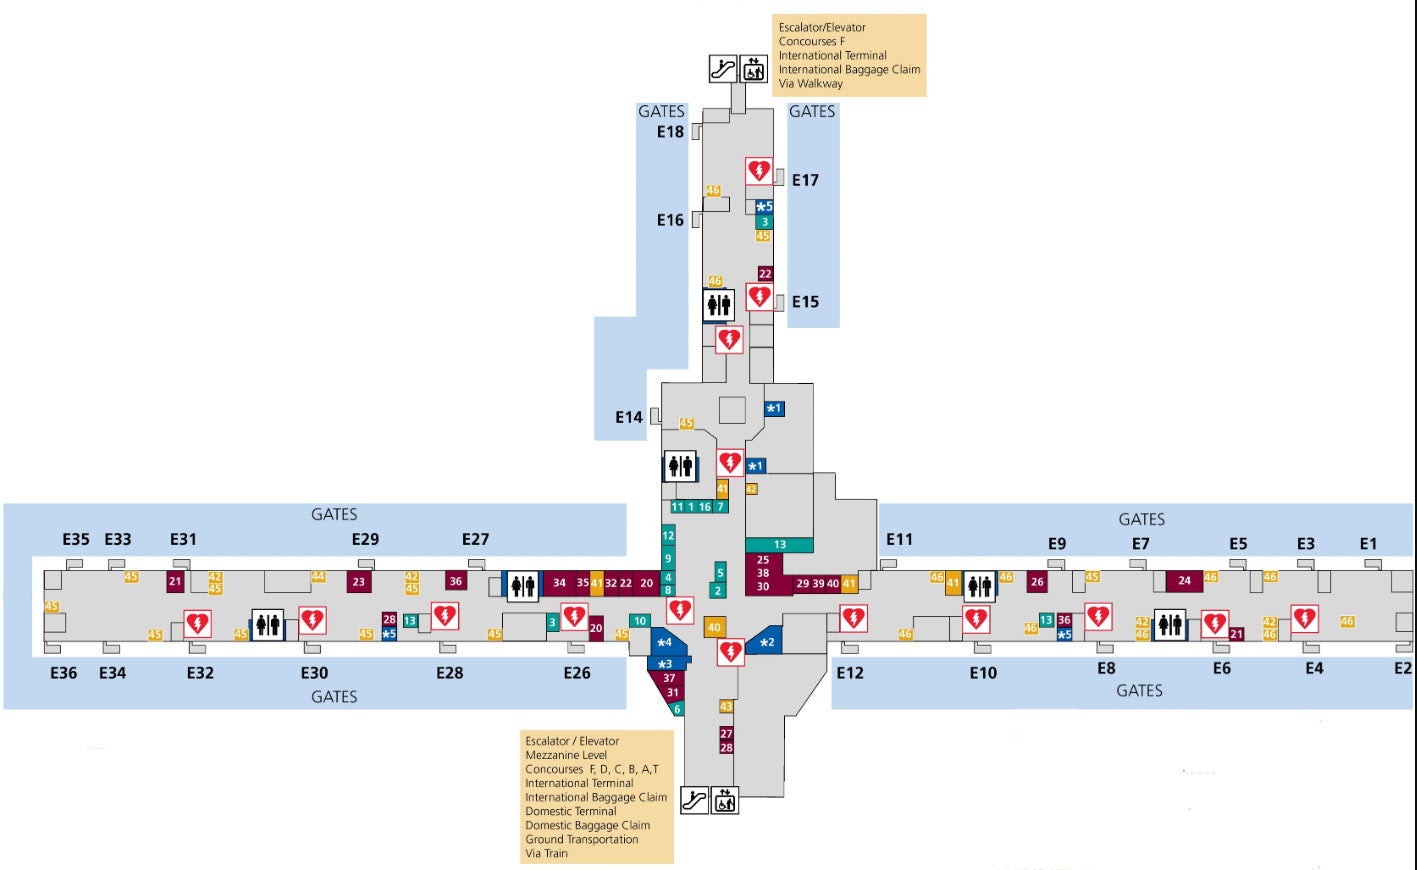 Atlanta Airport Terminal Map